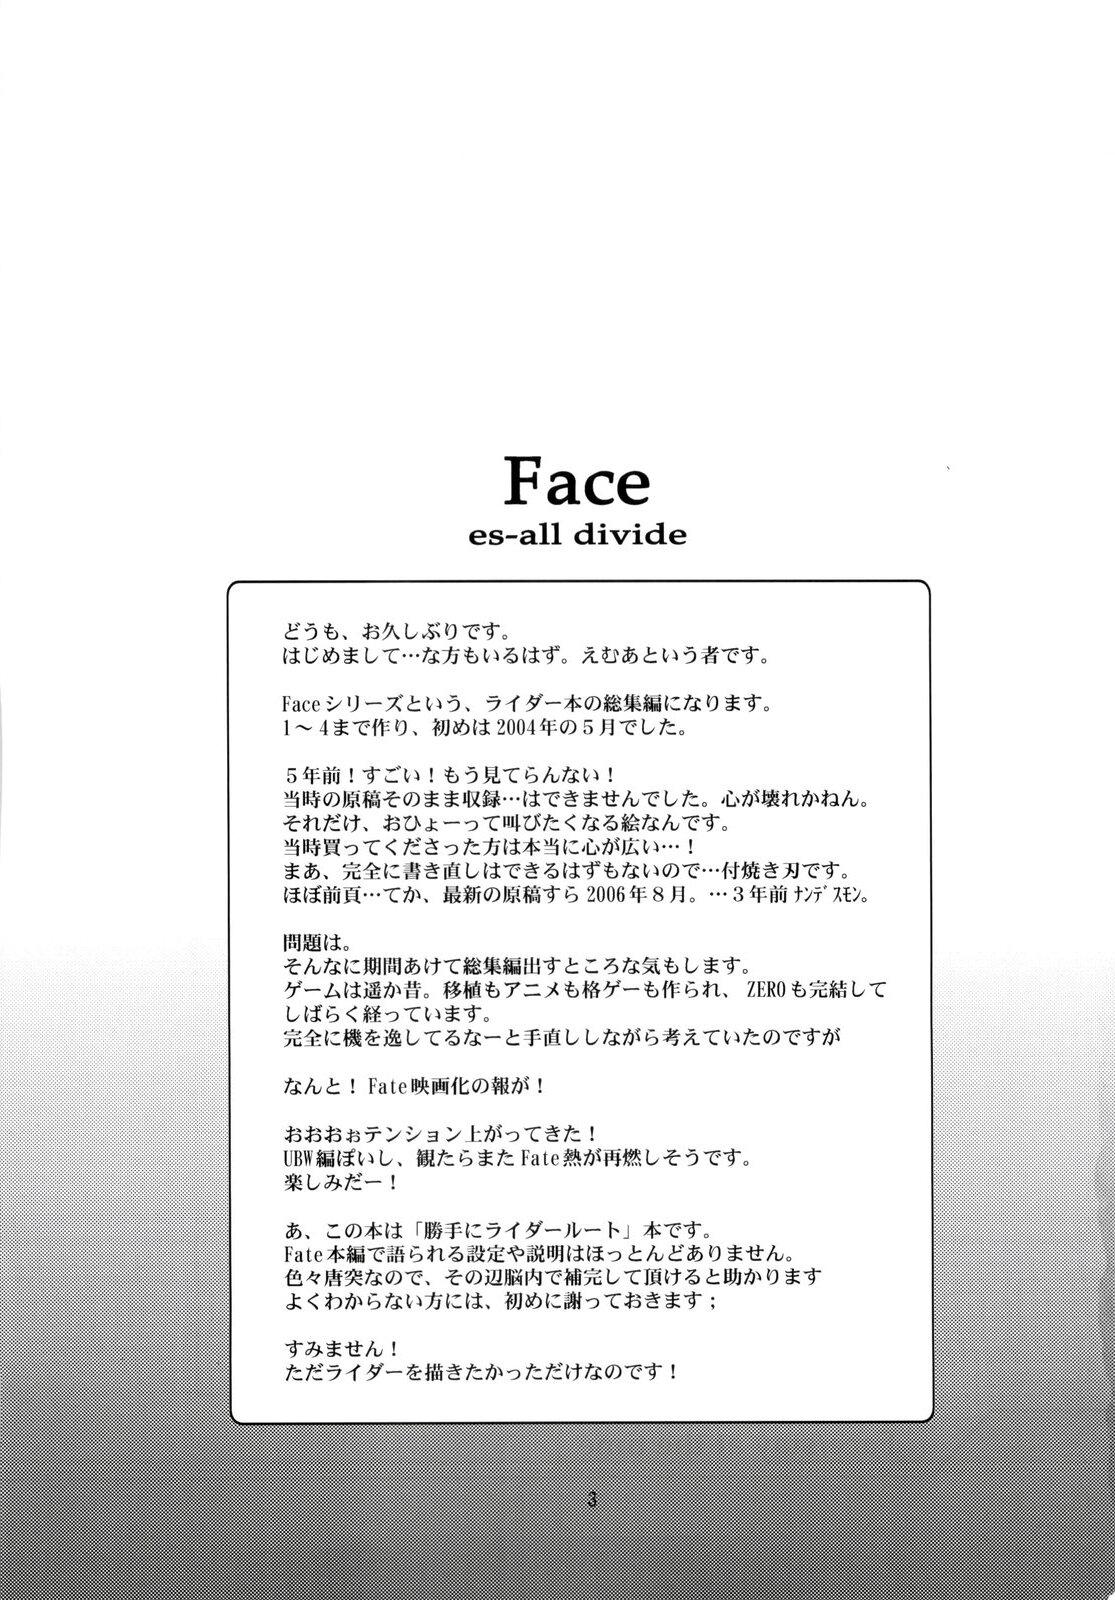 Hardcore Face es-all divide - Fate stay night Hardcore Porno - Page 2